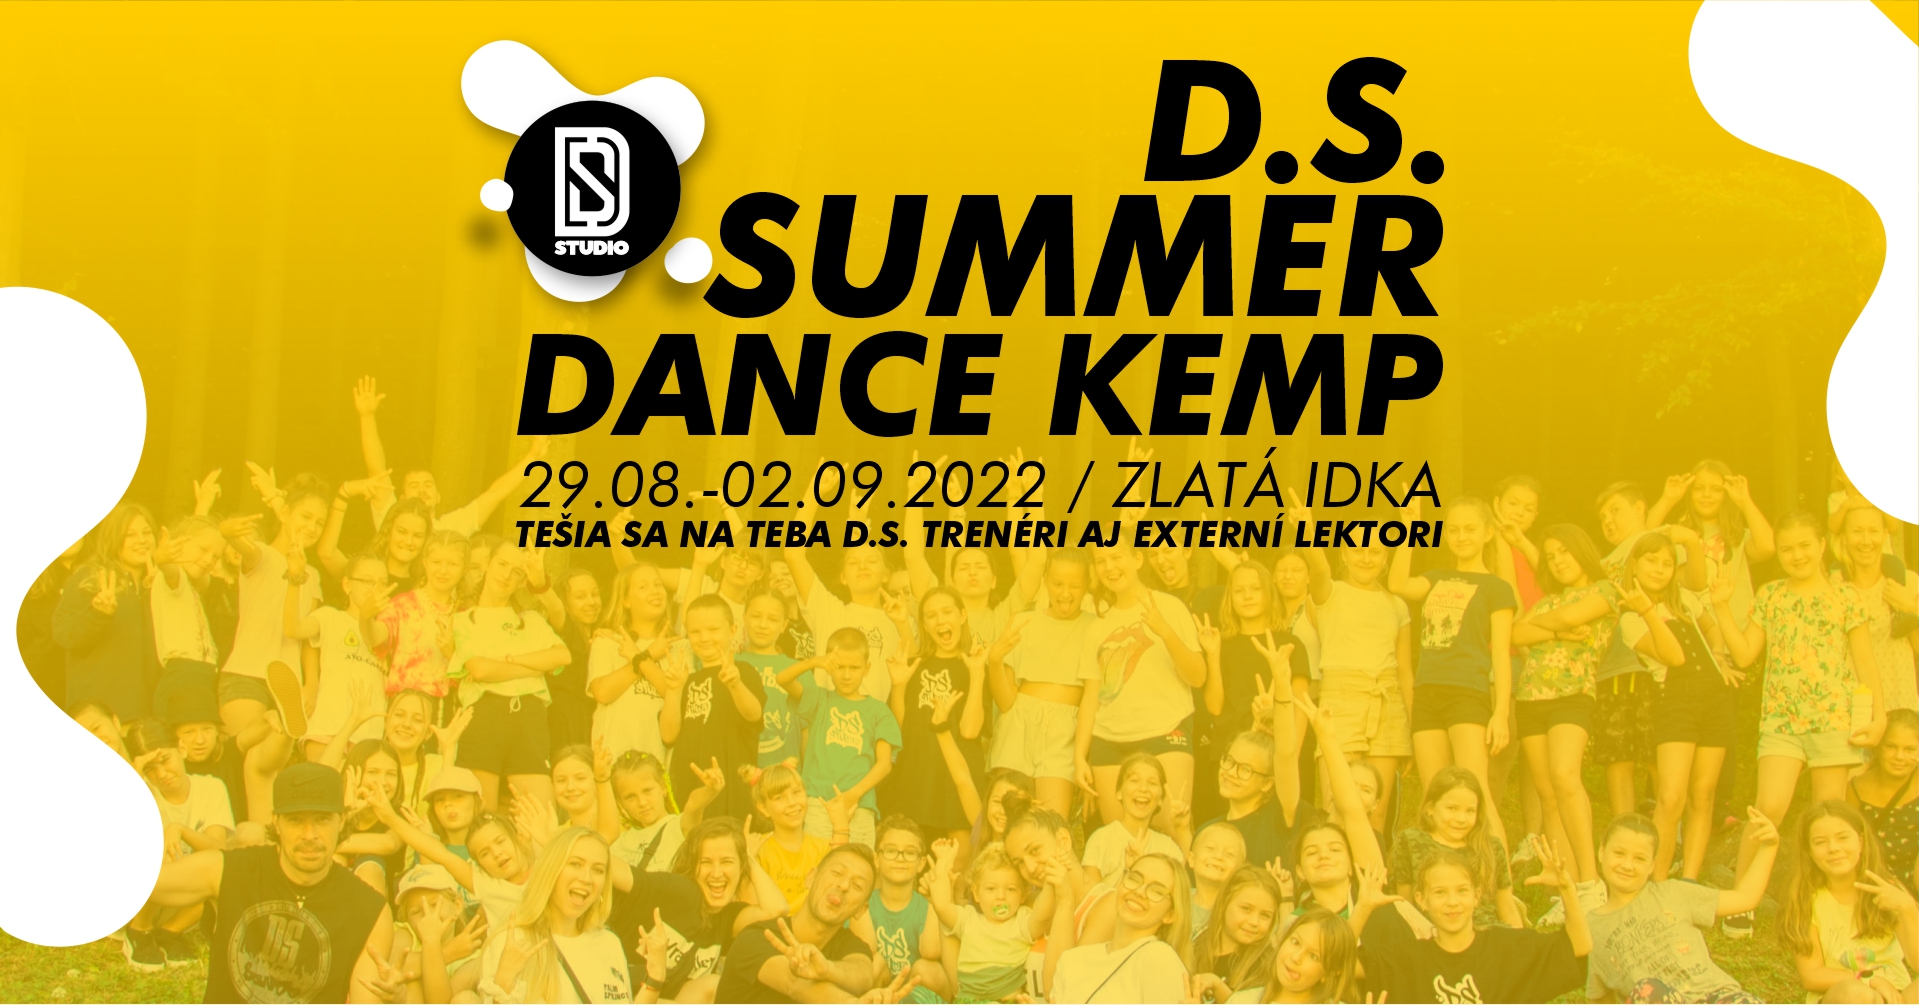 D.S. Summer Dance Kemp 2022